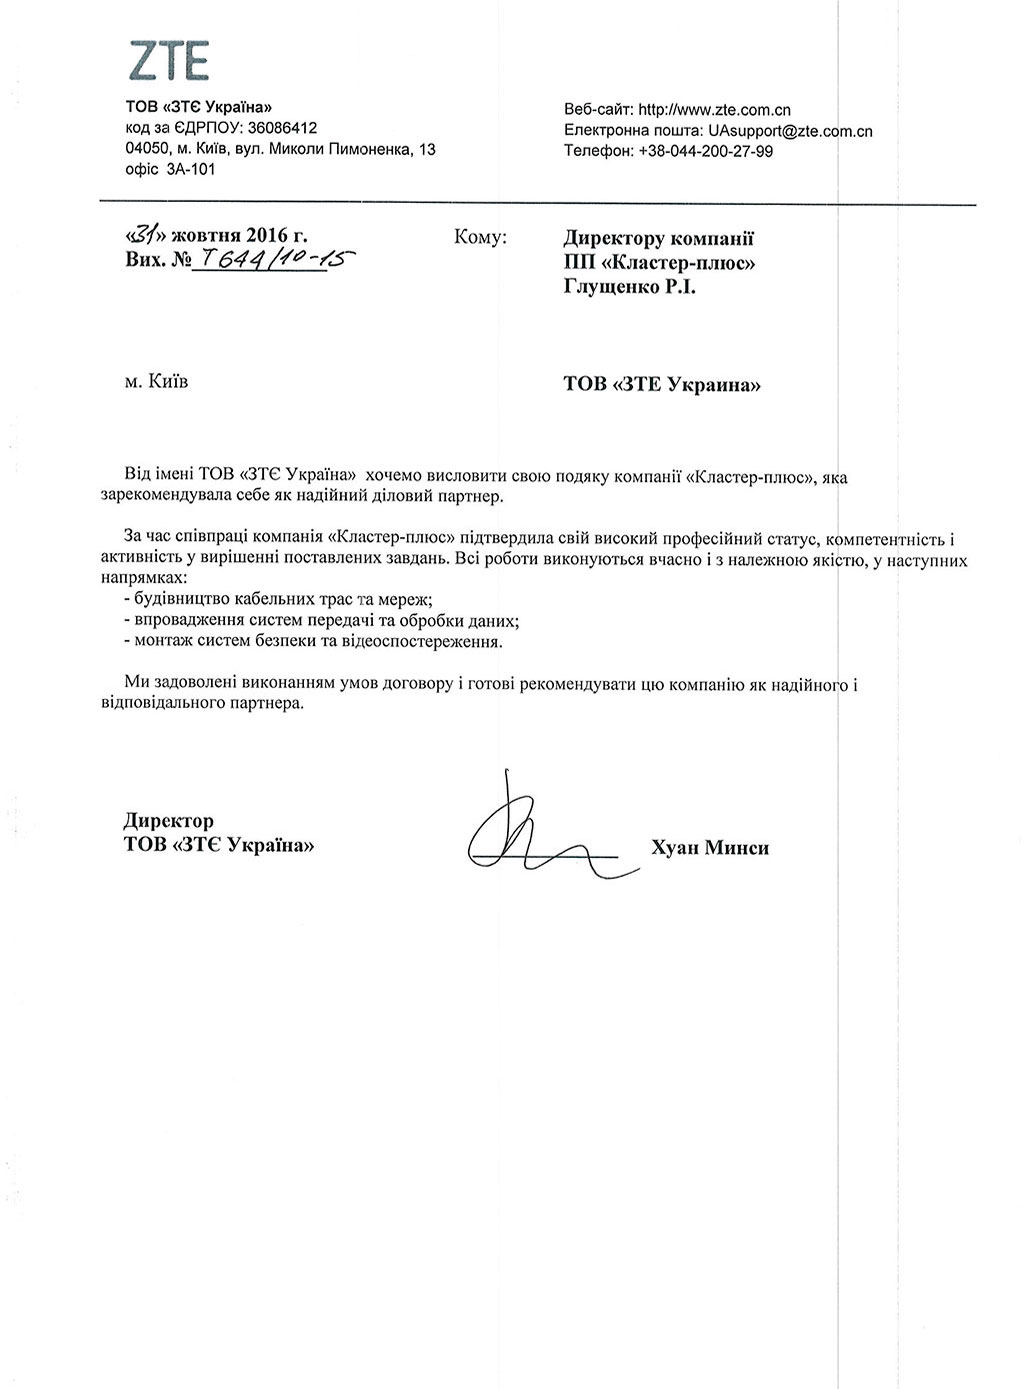 Рекомендаційний лист від ТОВ «ЗТЄ Україна»